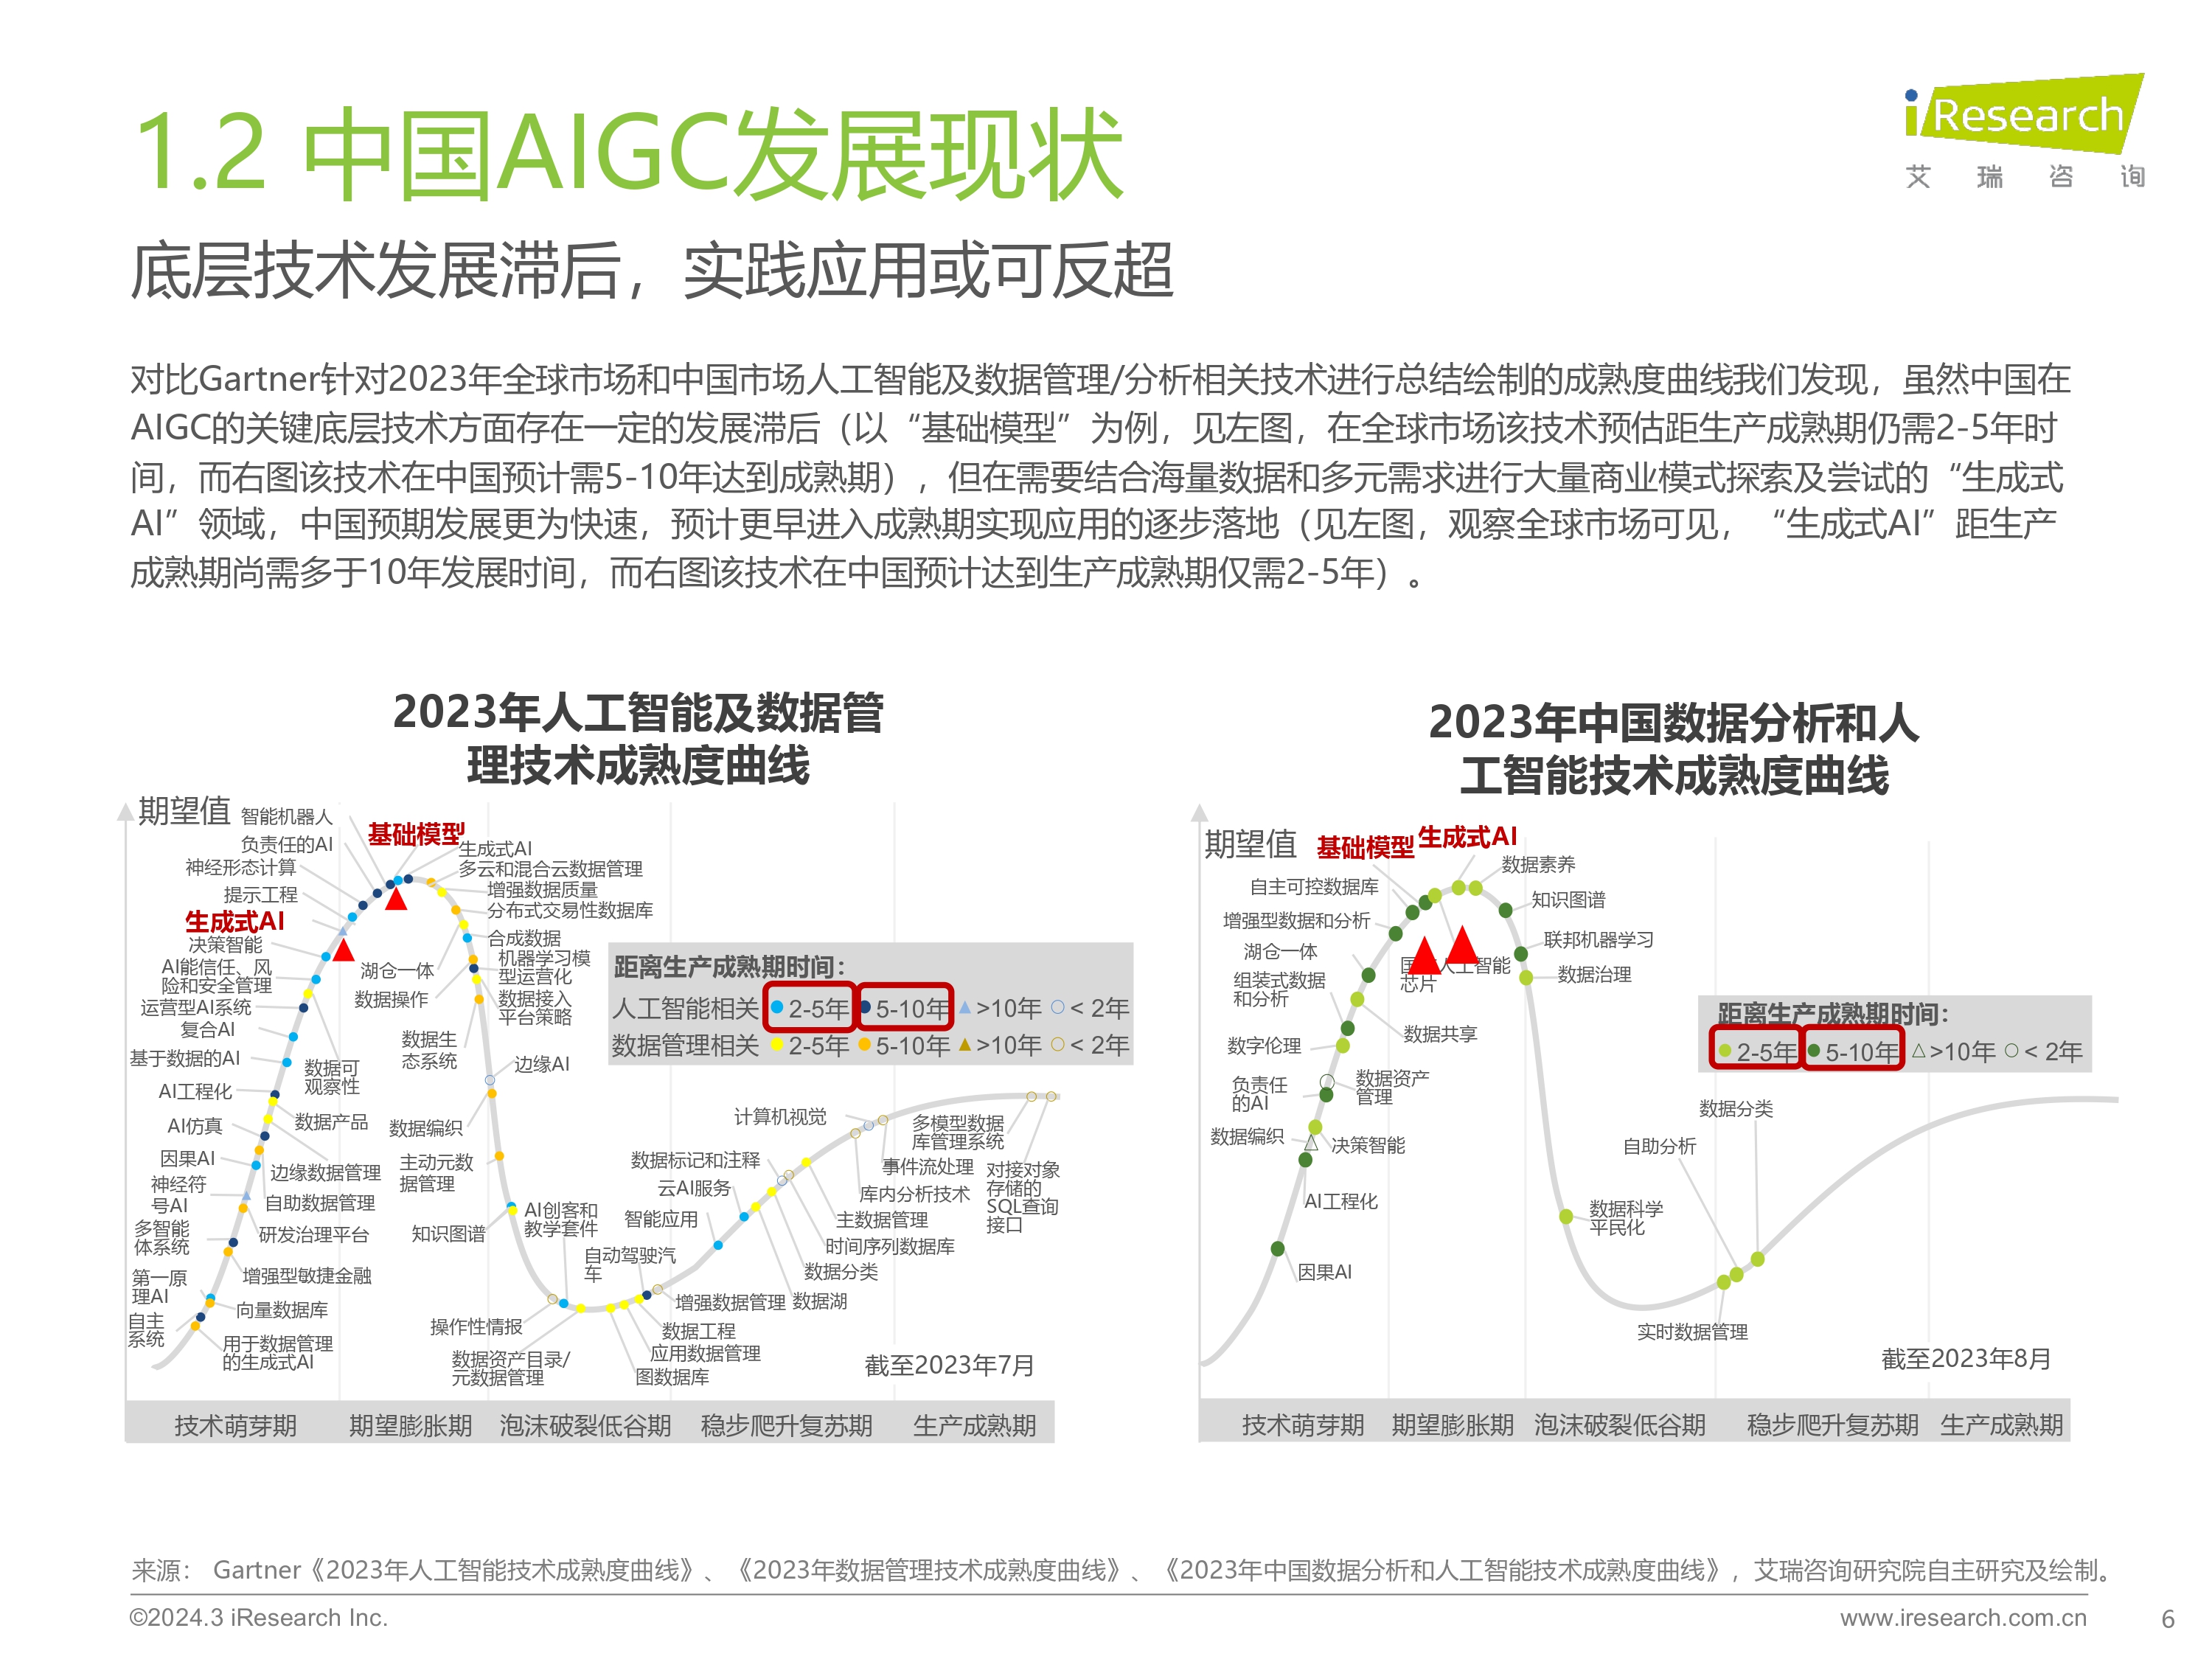 2023年中国营销领域AIGC技术应用研究报告-0320_page-0006.jpg